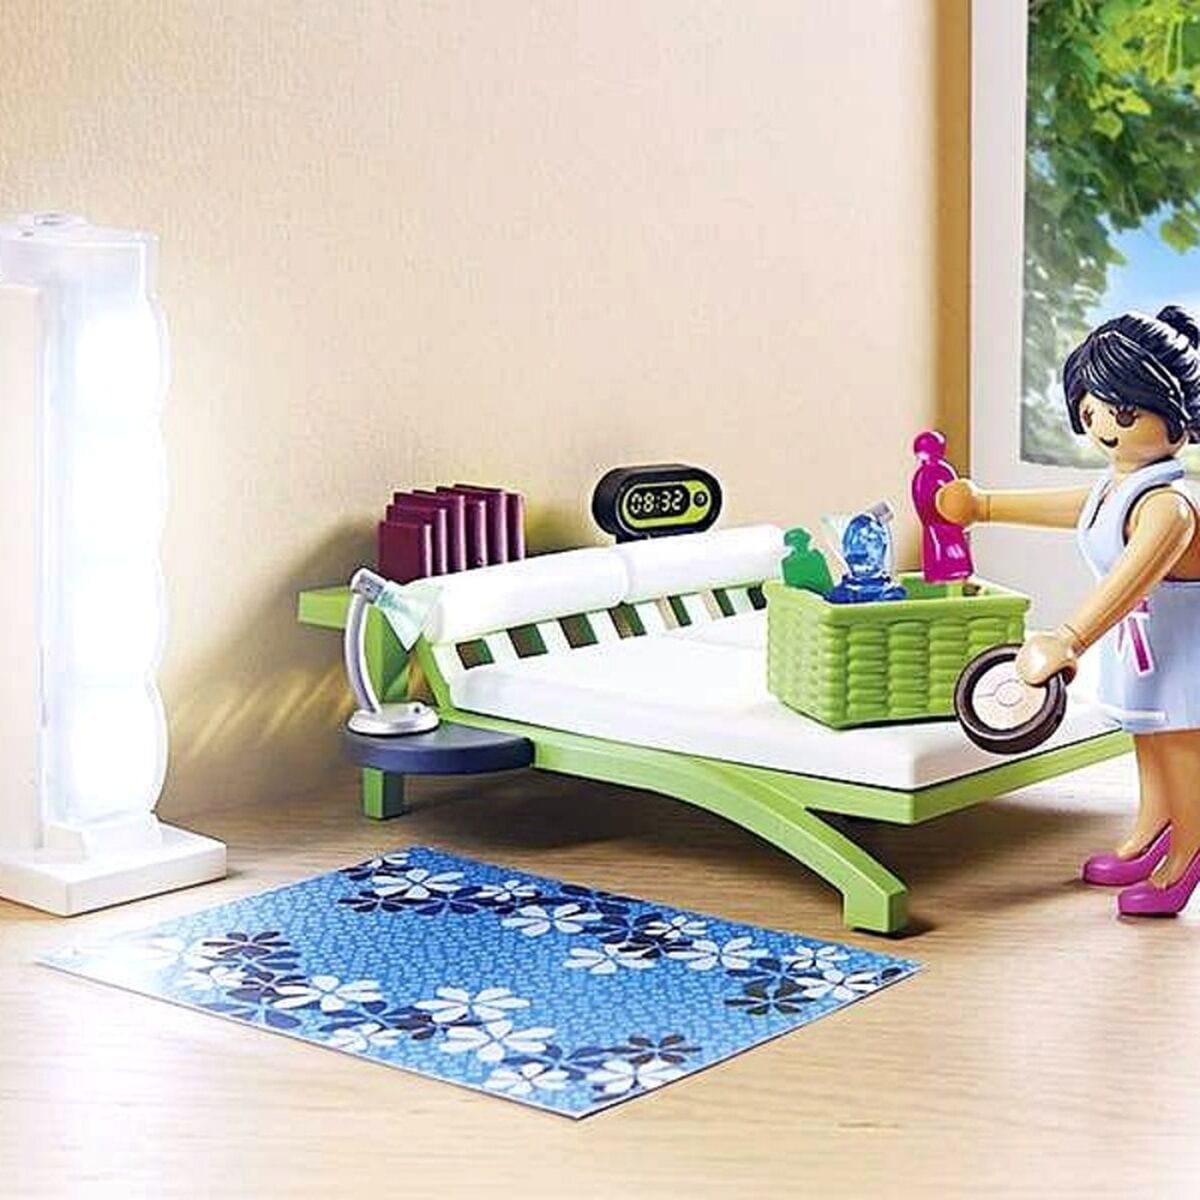 Playmobil Spielzeug | Kostüme > Spielzeug und Spiele > Puppen und Plüschtiere Playset City Life Home Bedroom Playmobil 9271 (21 pcs) Raum